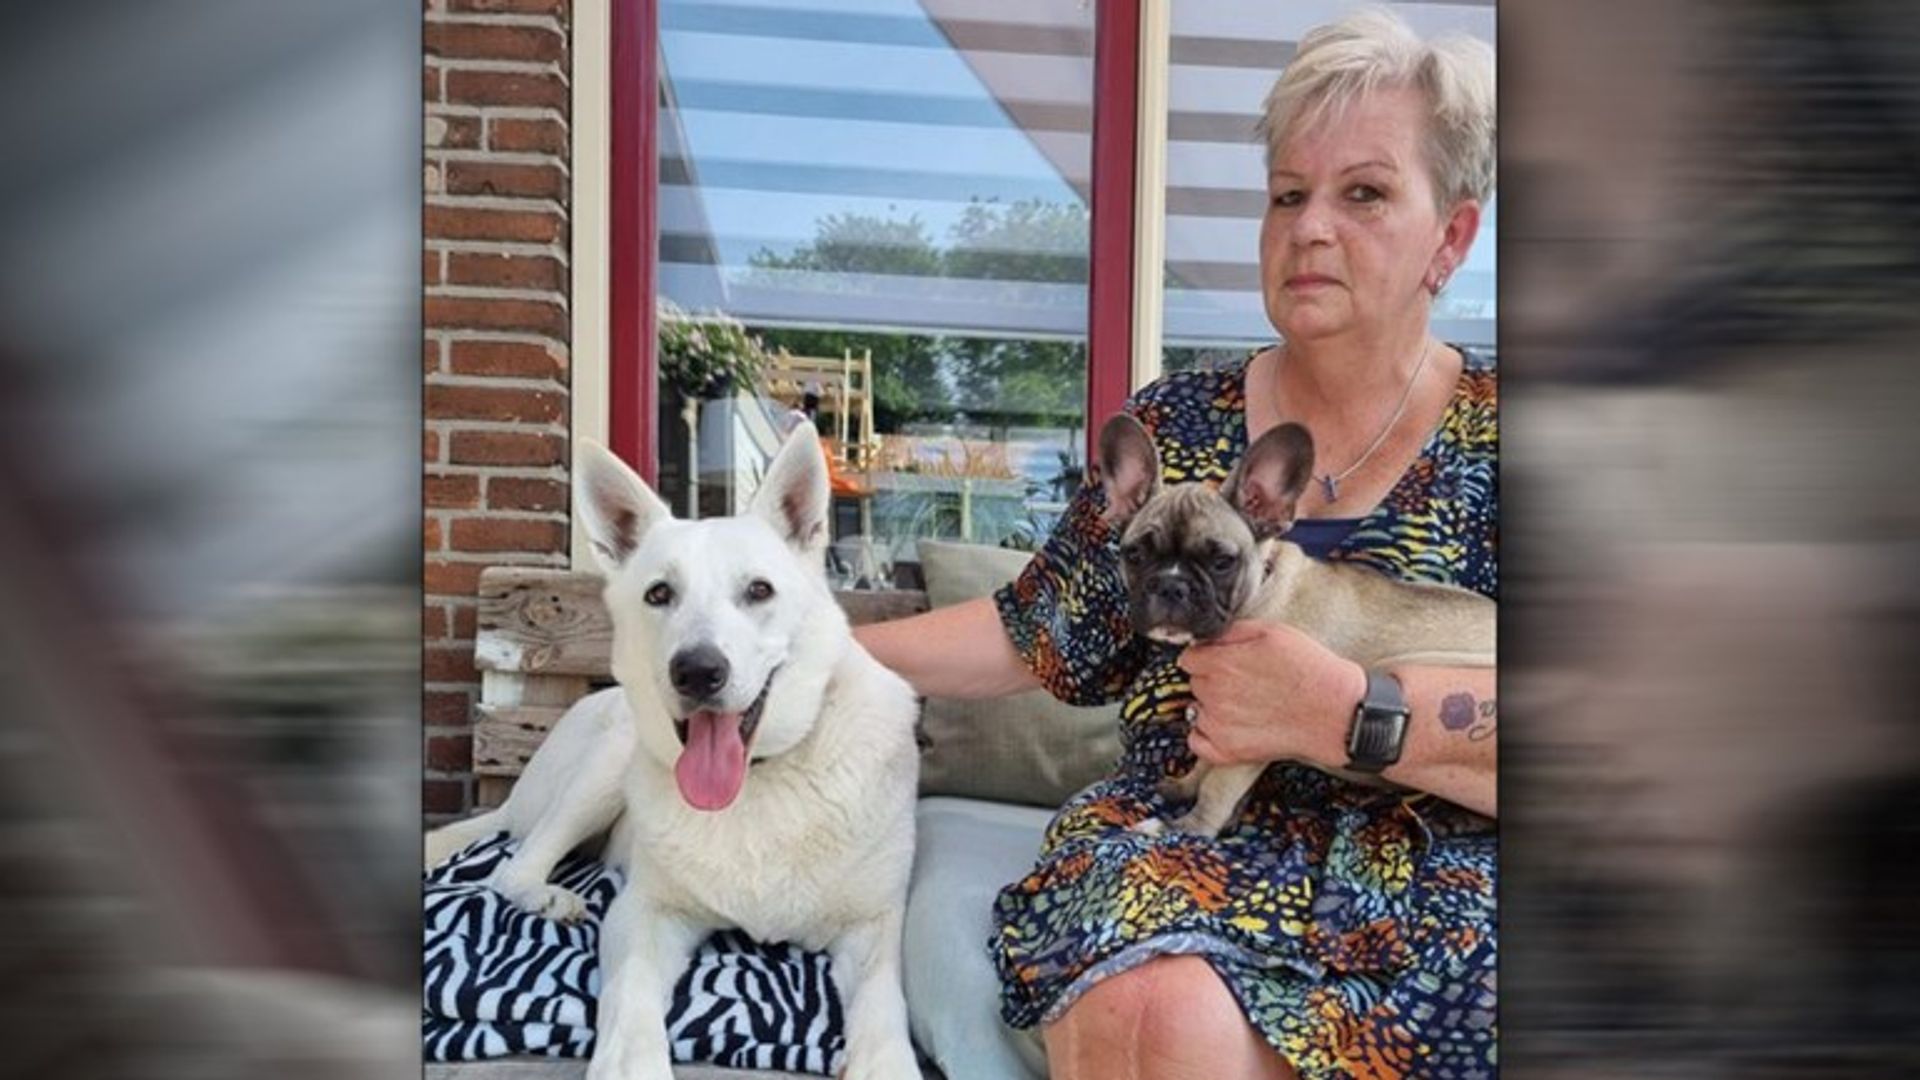 WOS.nl - Steeds meer zieke puppy's toename bij broodfokkers: 'Jody na dagen dood'